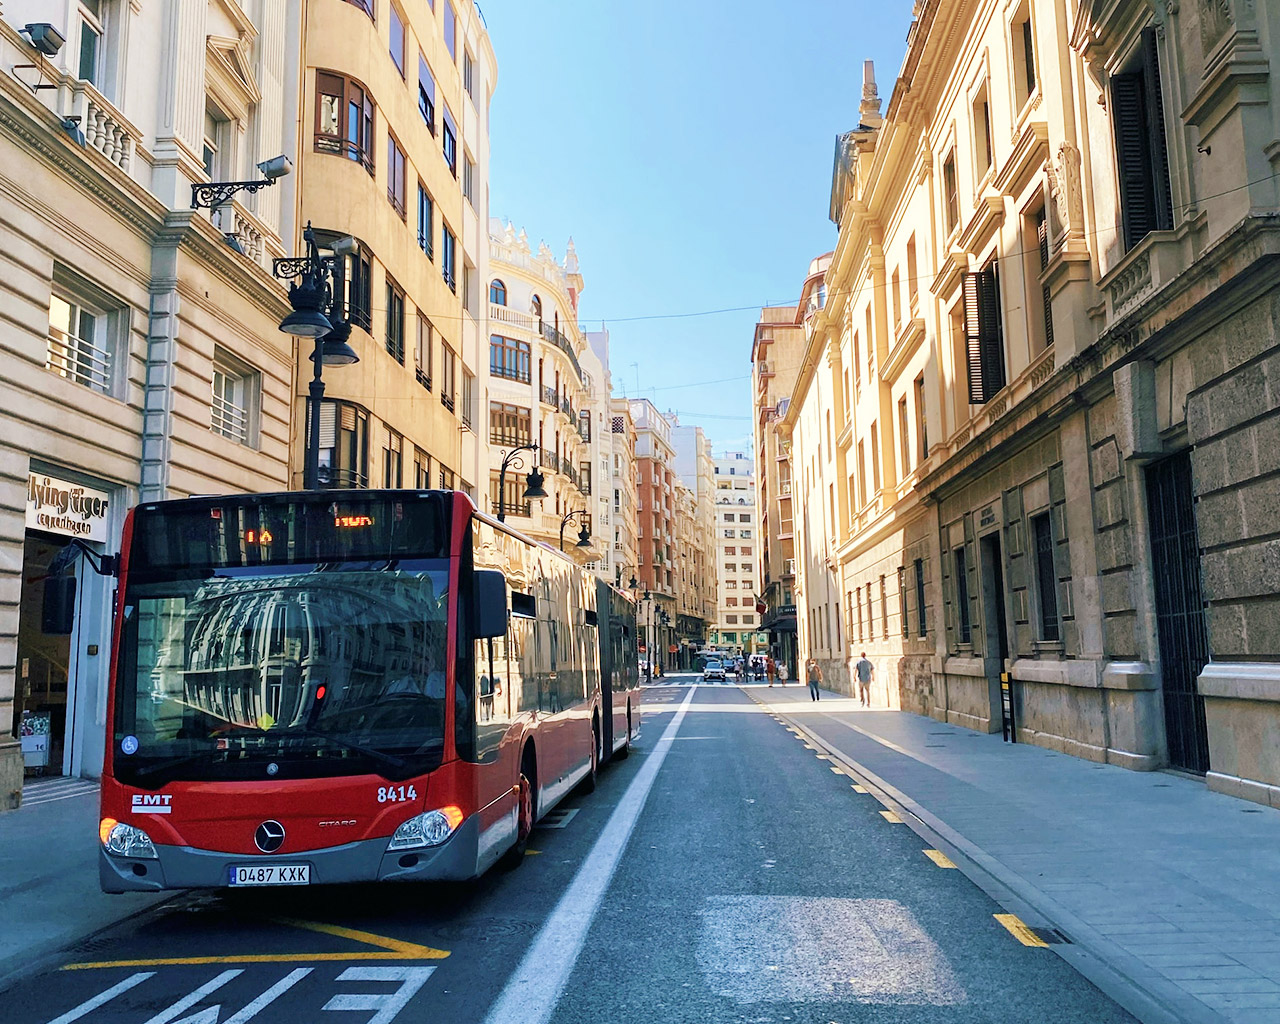 Carnet de conducir D y D1: requisitos y cómo obtener el permiso de conducir autobús en España